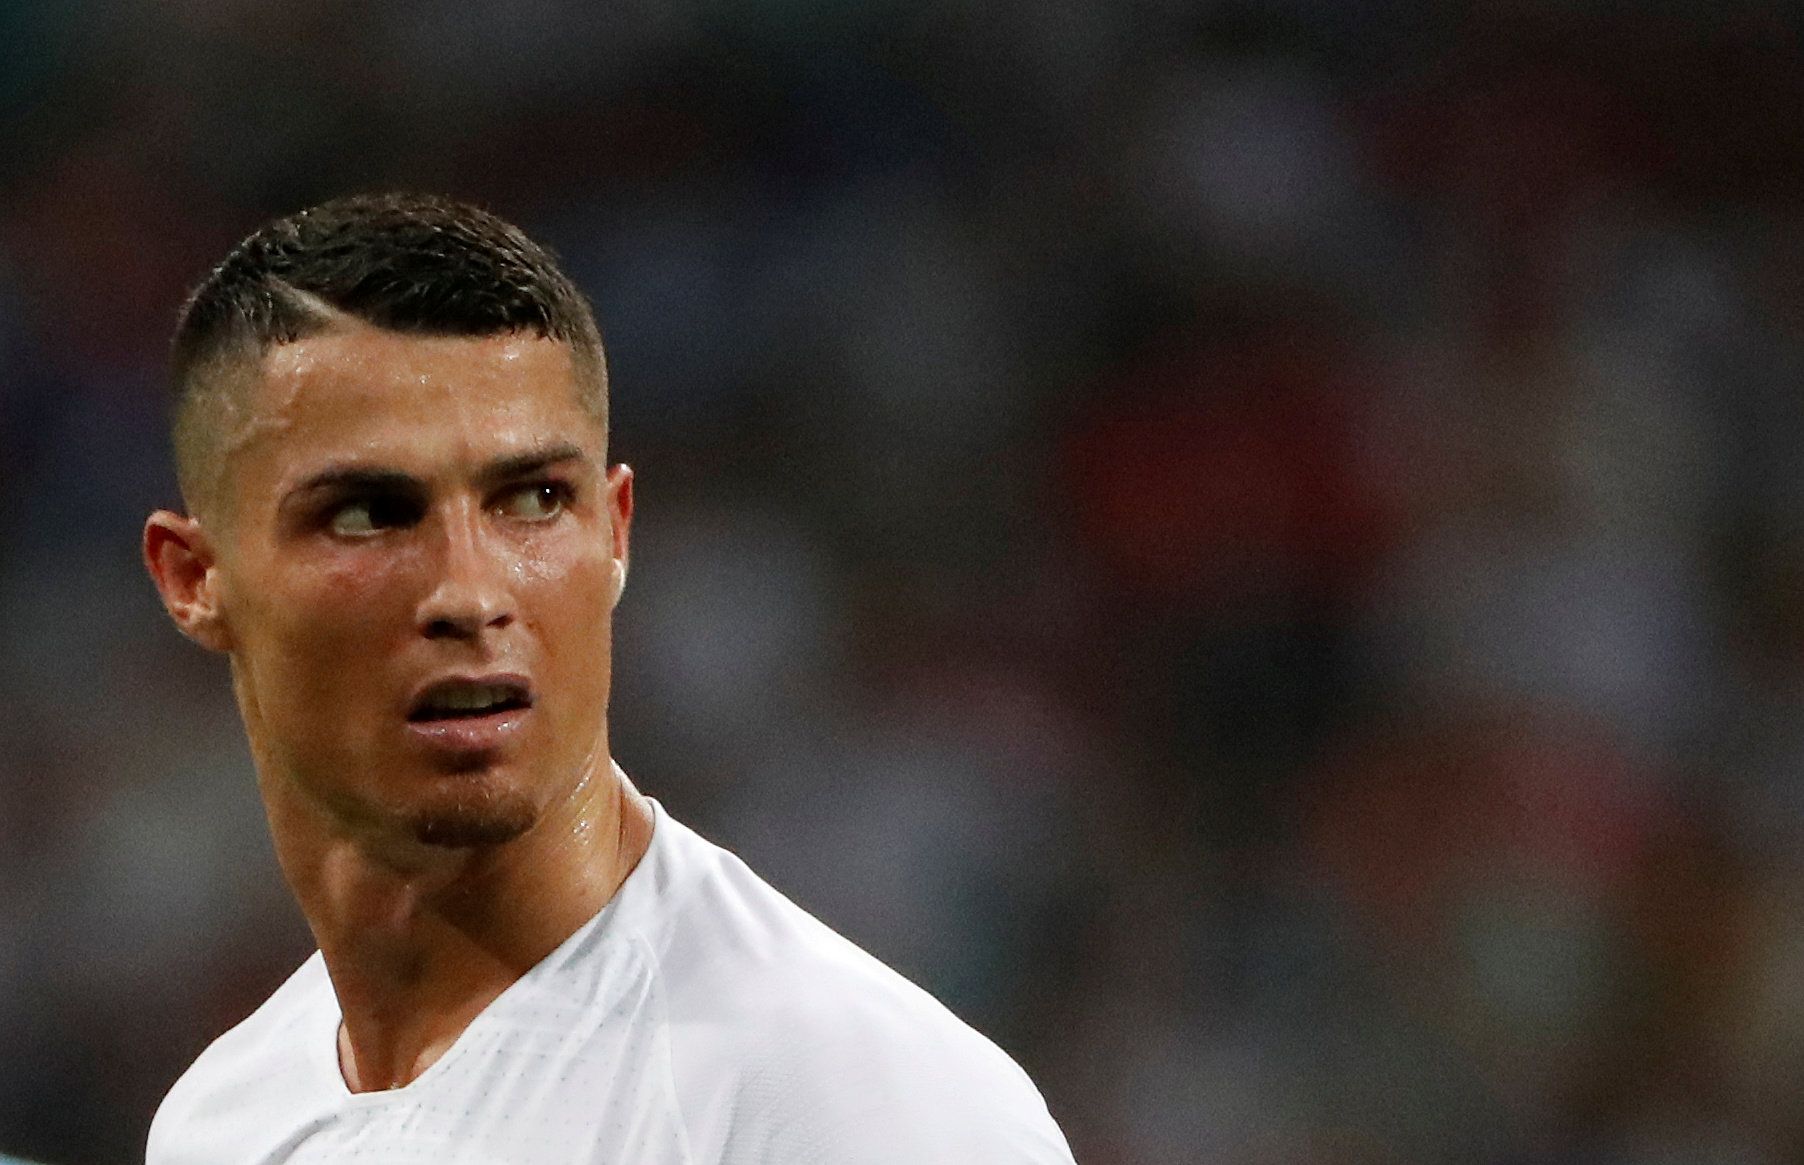 El seleccionador portugués manifestó su apoyo rotundo al futbolista frente a la denuncia de una presunta violación.